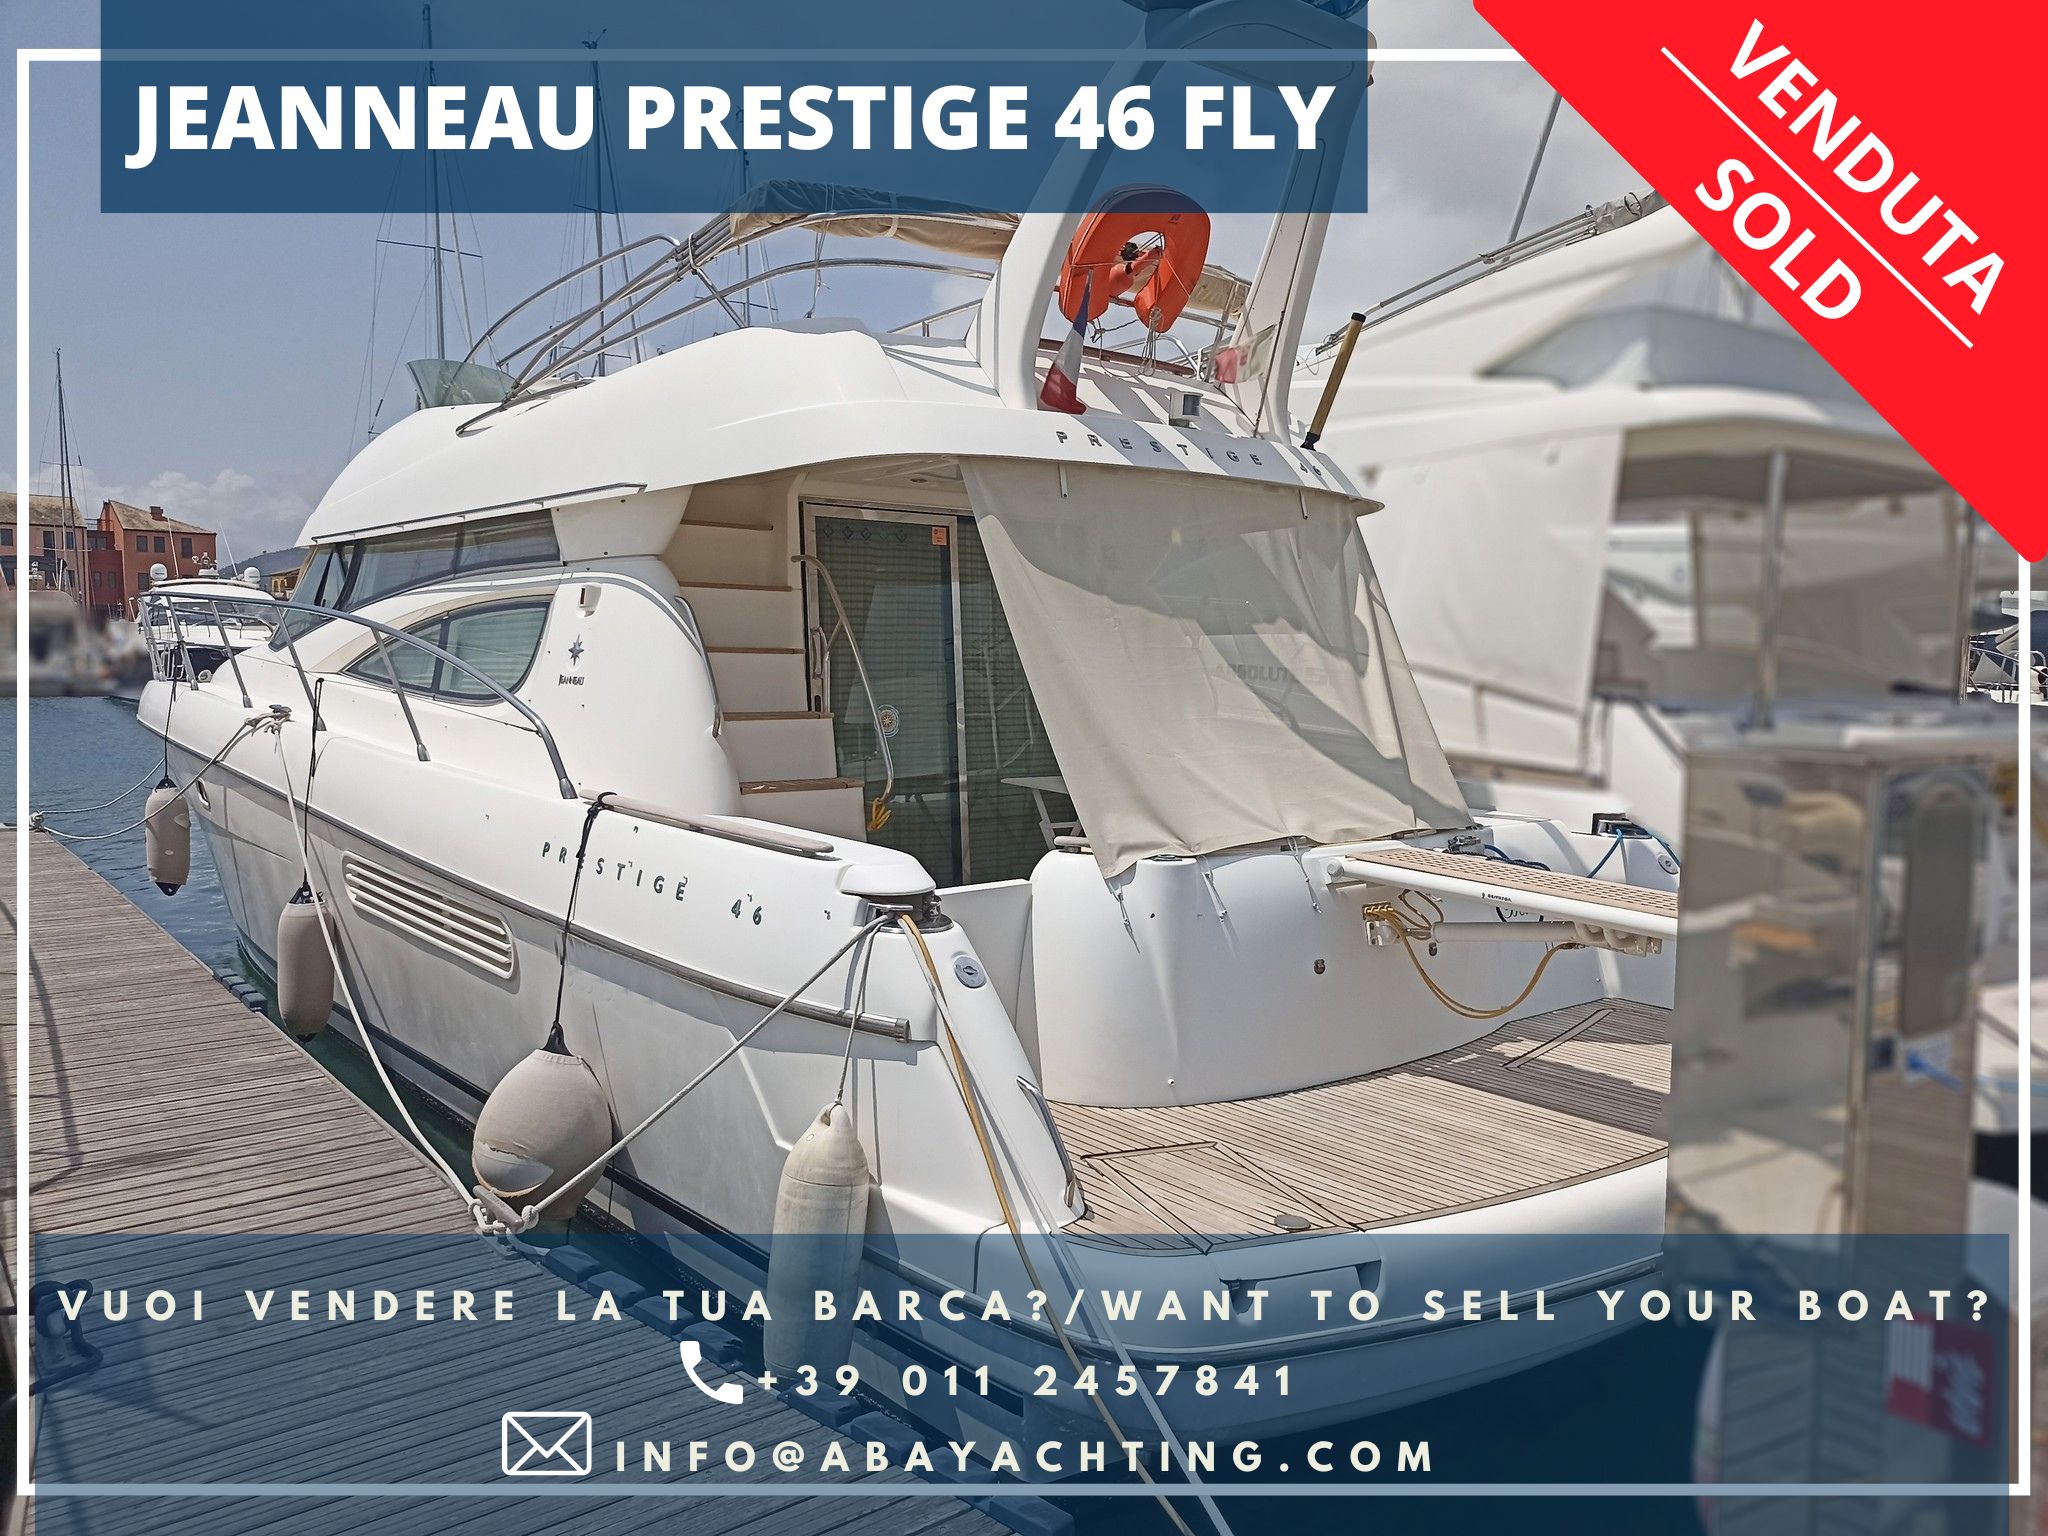 Jeanneau Prestige 46 sold